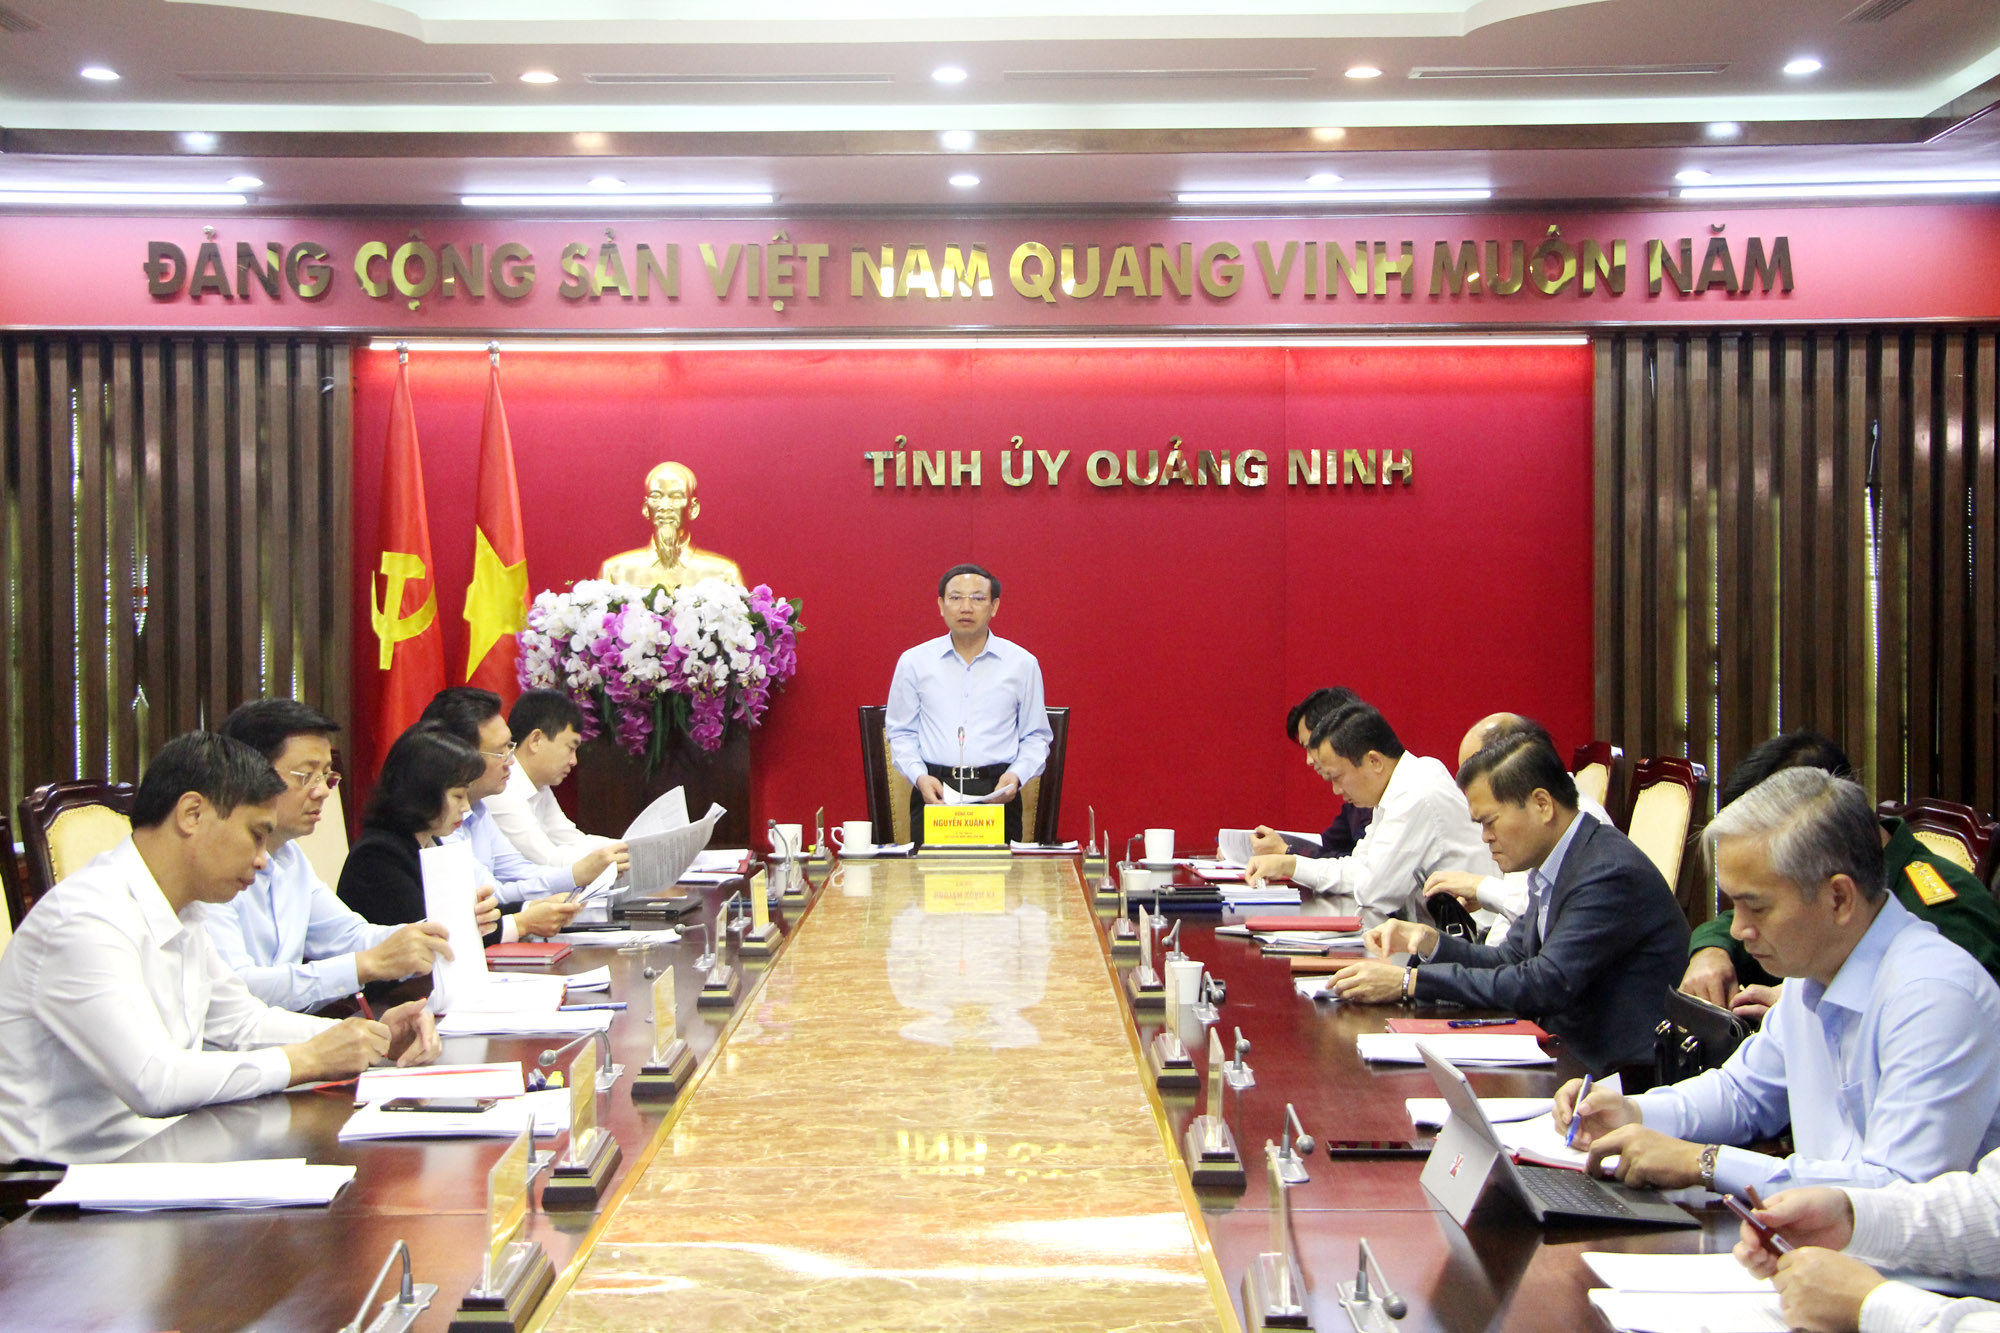 Đồng chí Nguyễn Xuân Ký, Bí thư Tỉnh ủy, Chủ tịch HĐND tỉnh, kết luận hội nghị,